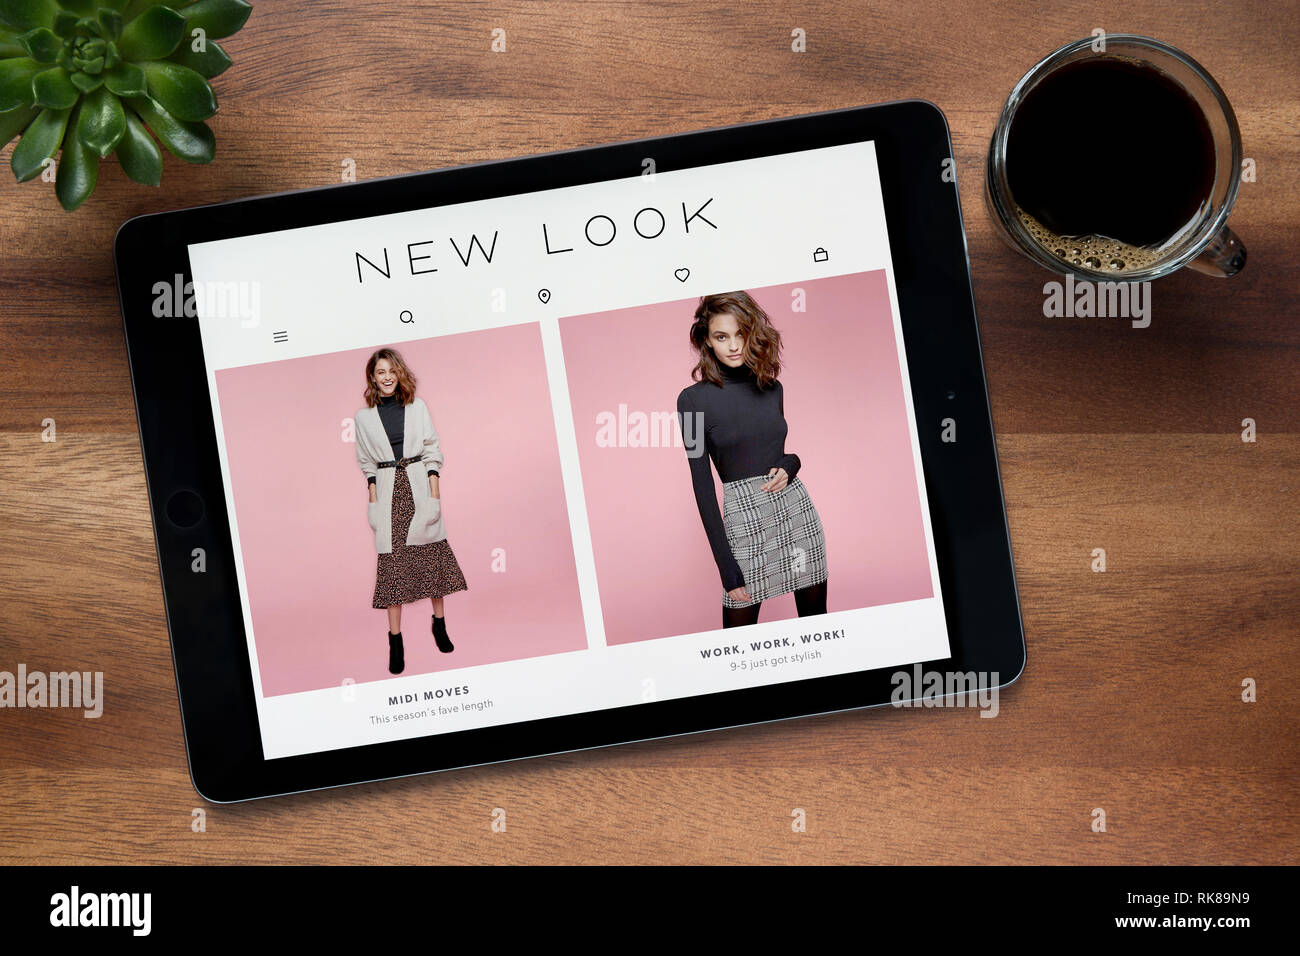 Die Website der neue Look ist auf einem iPad Tablet gesehen, auf einer hölzernen Tisch zusammen mit einem Espresso und einem Haus Anlage (nur redaktionelle Nutzung). Stockfoto